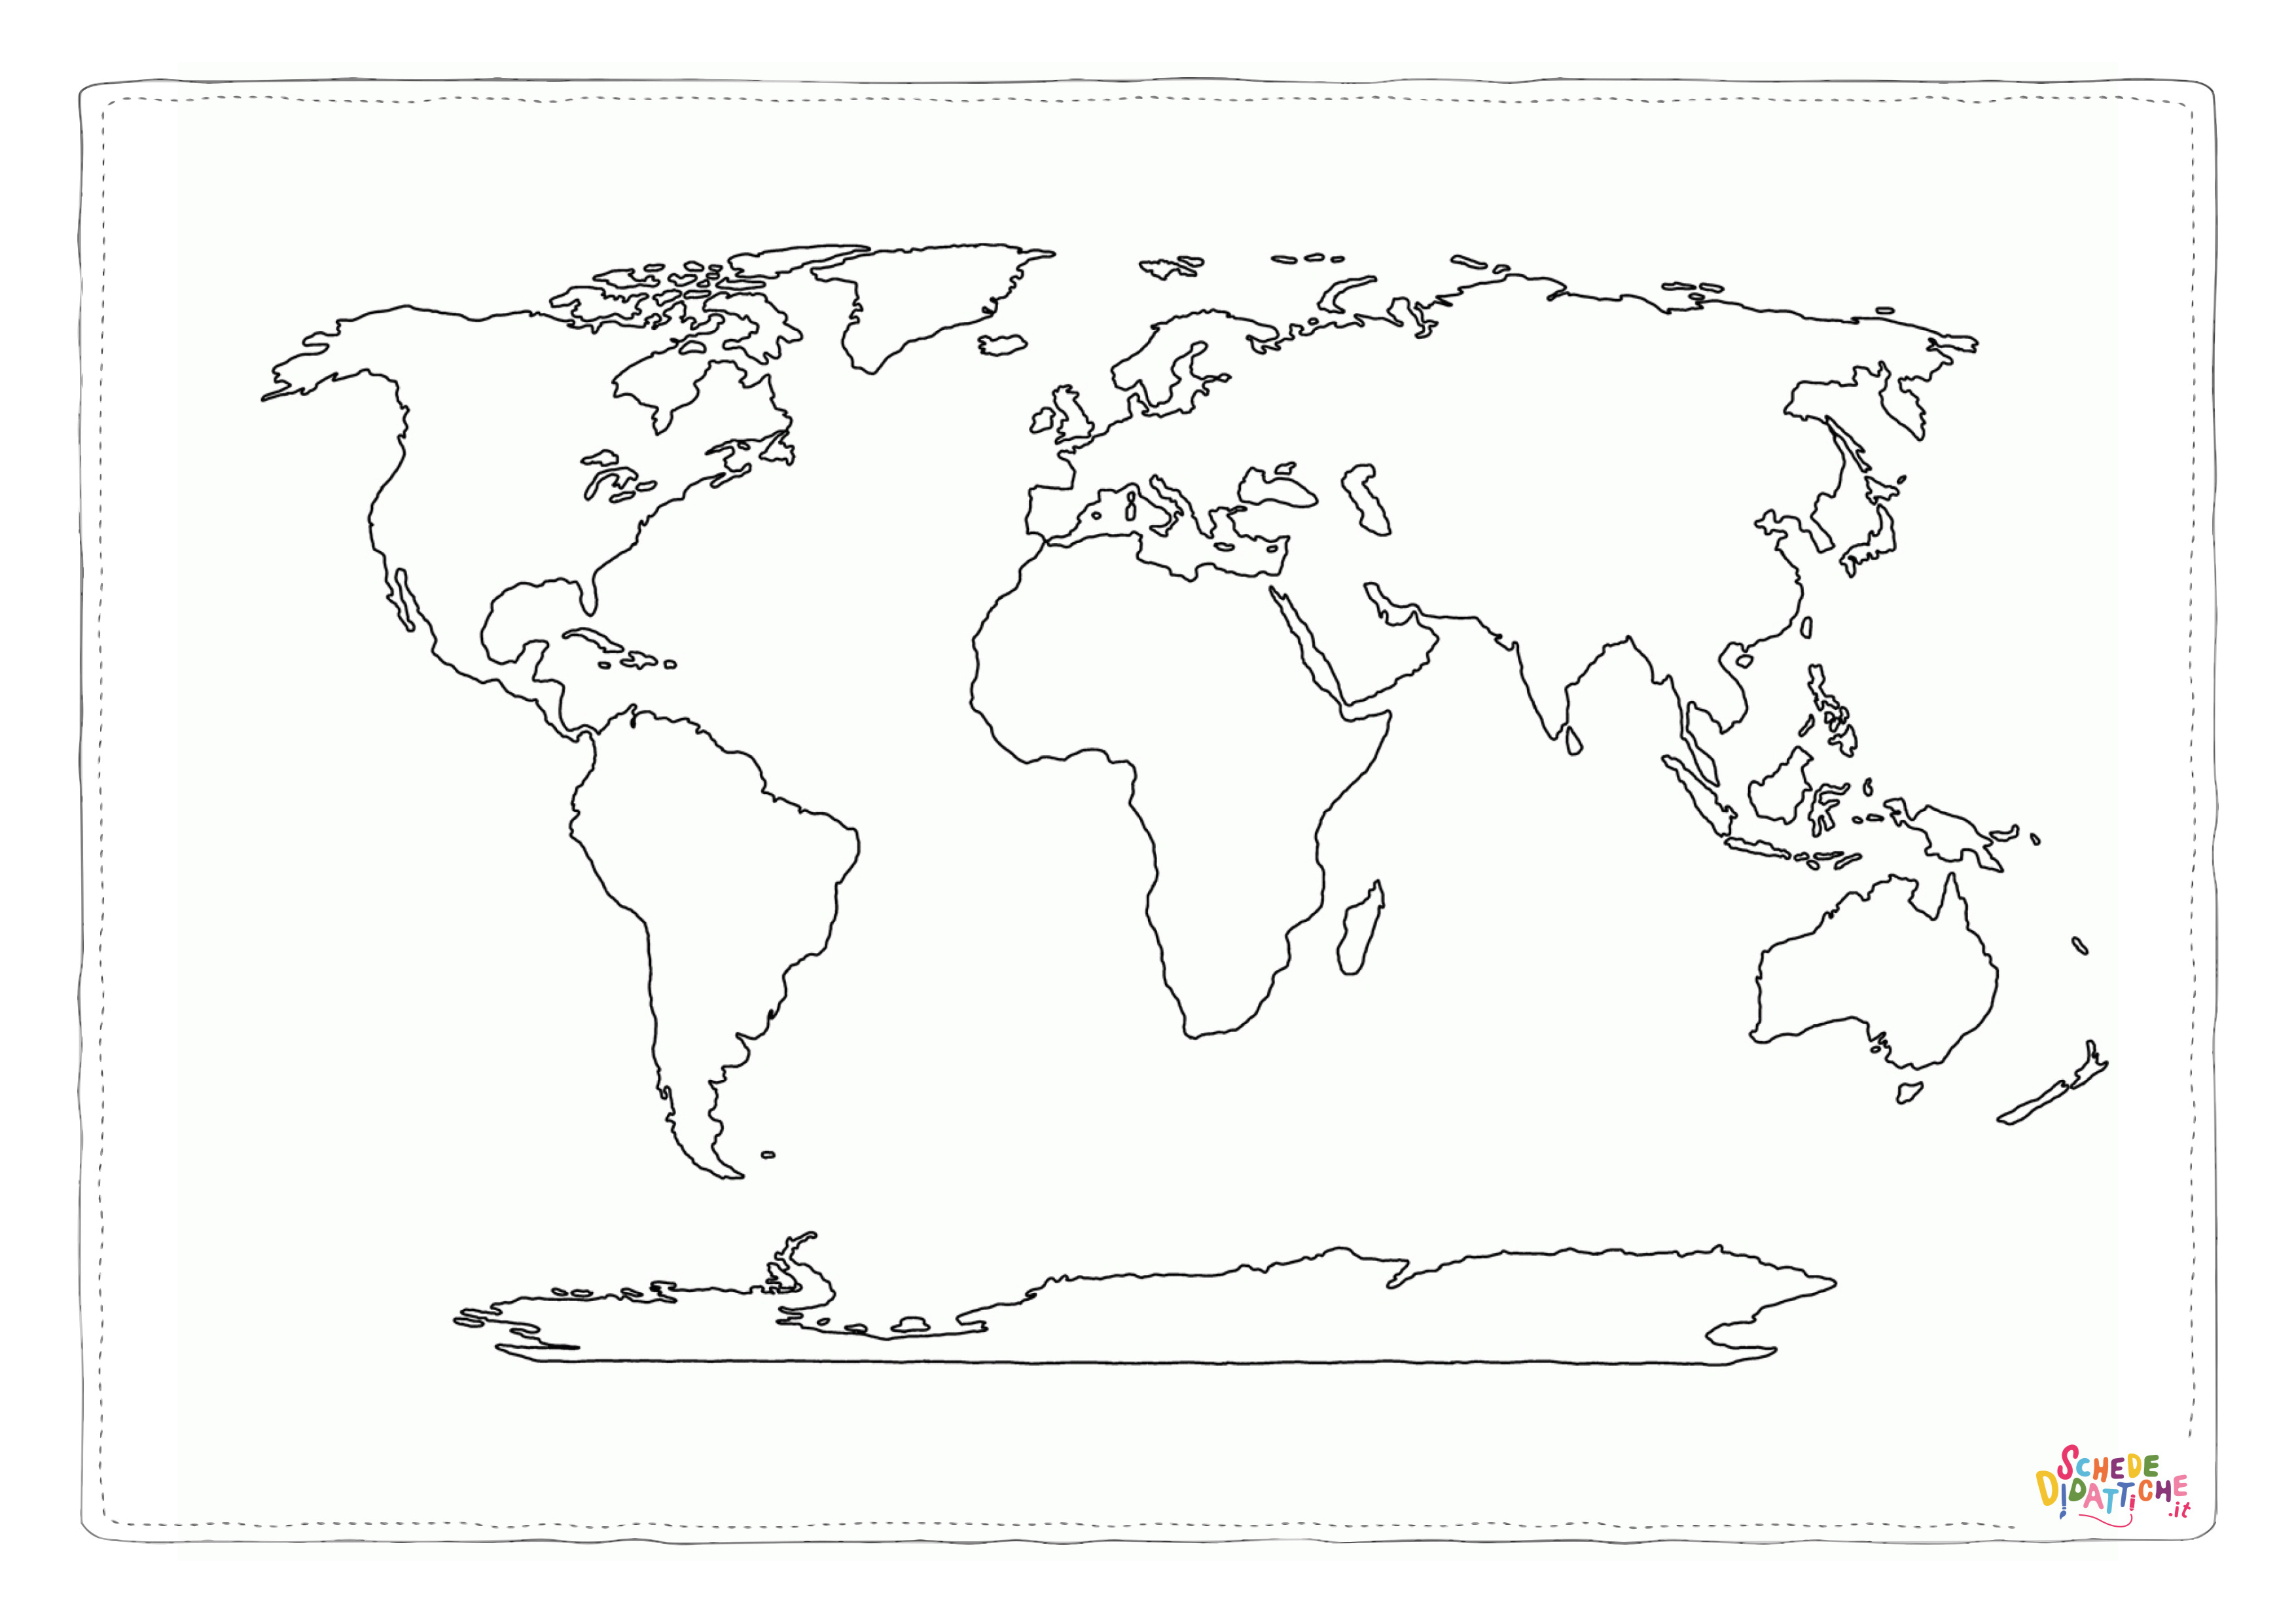 Disegno di cartina geografica